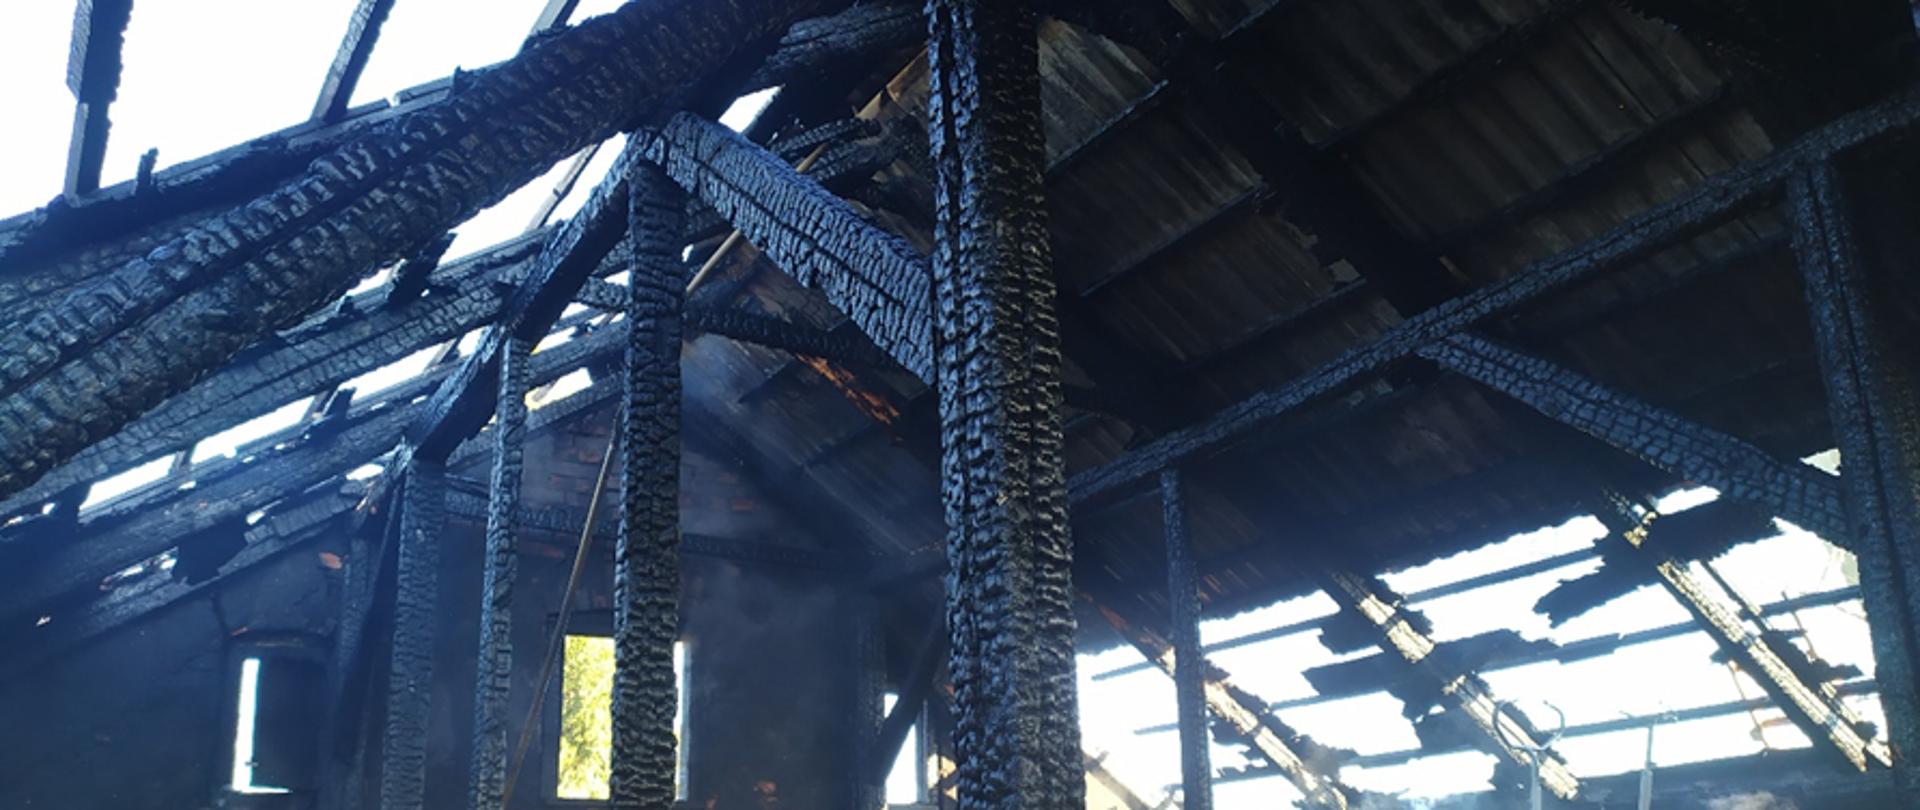 Zdjęcie przedstawia poddasze budynku po pożarze